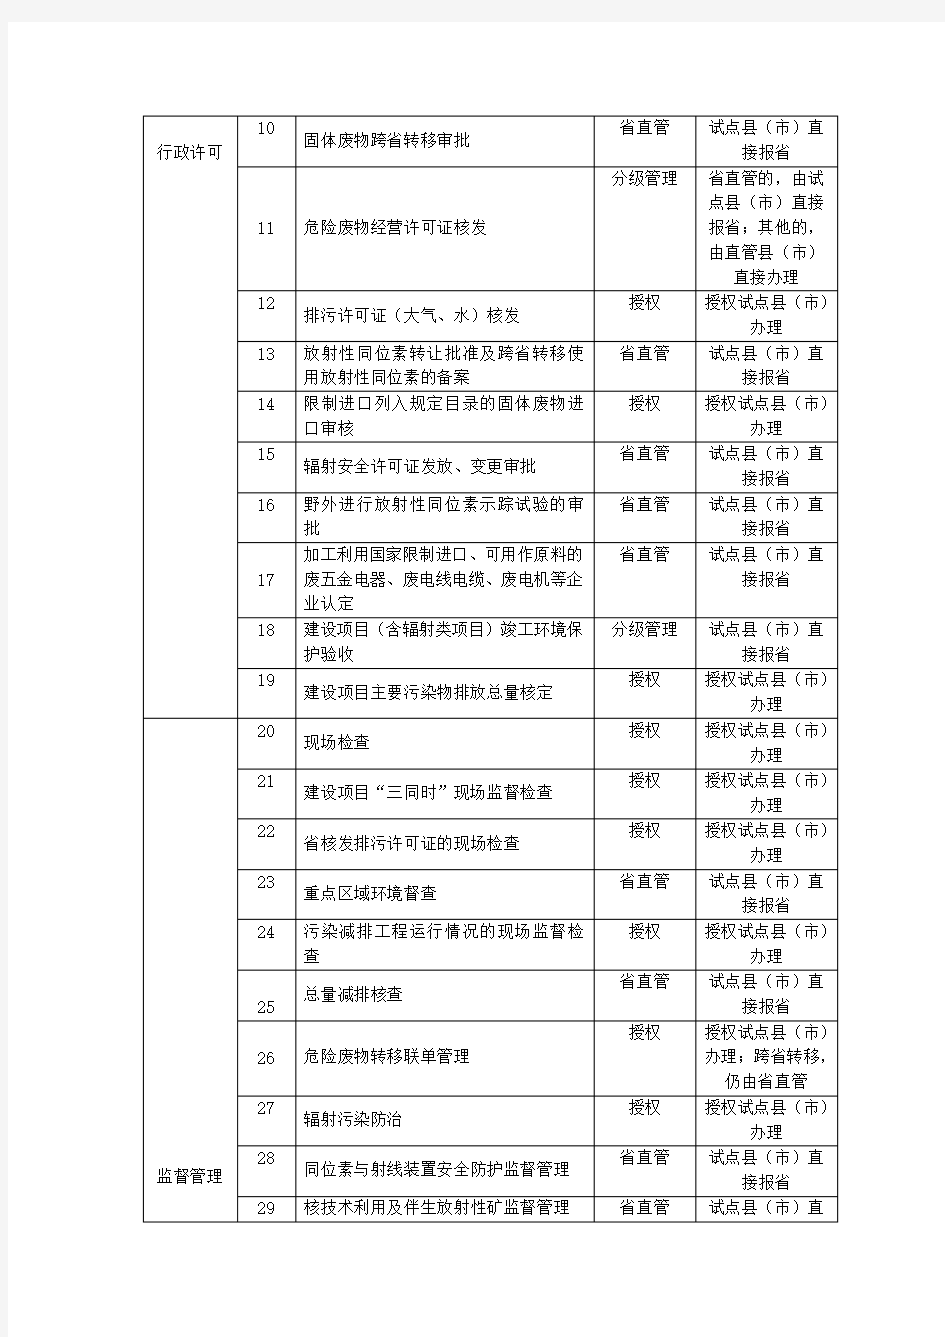 冀环办发【2015】36号 河北省环保厅管理事项调整目录表(与省直管县市对接)